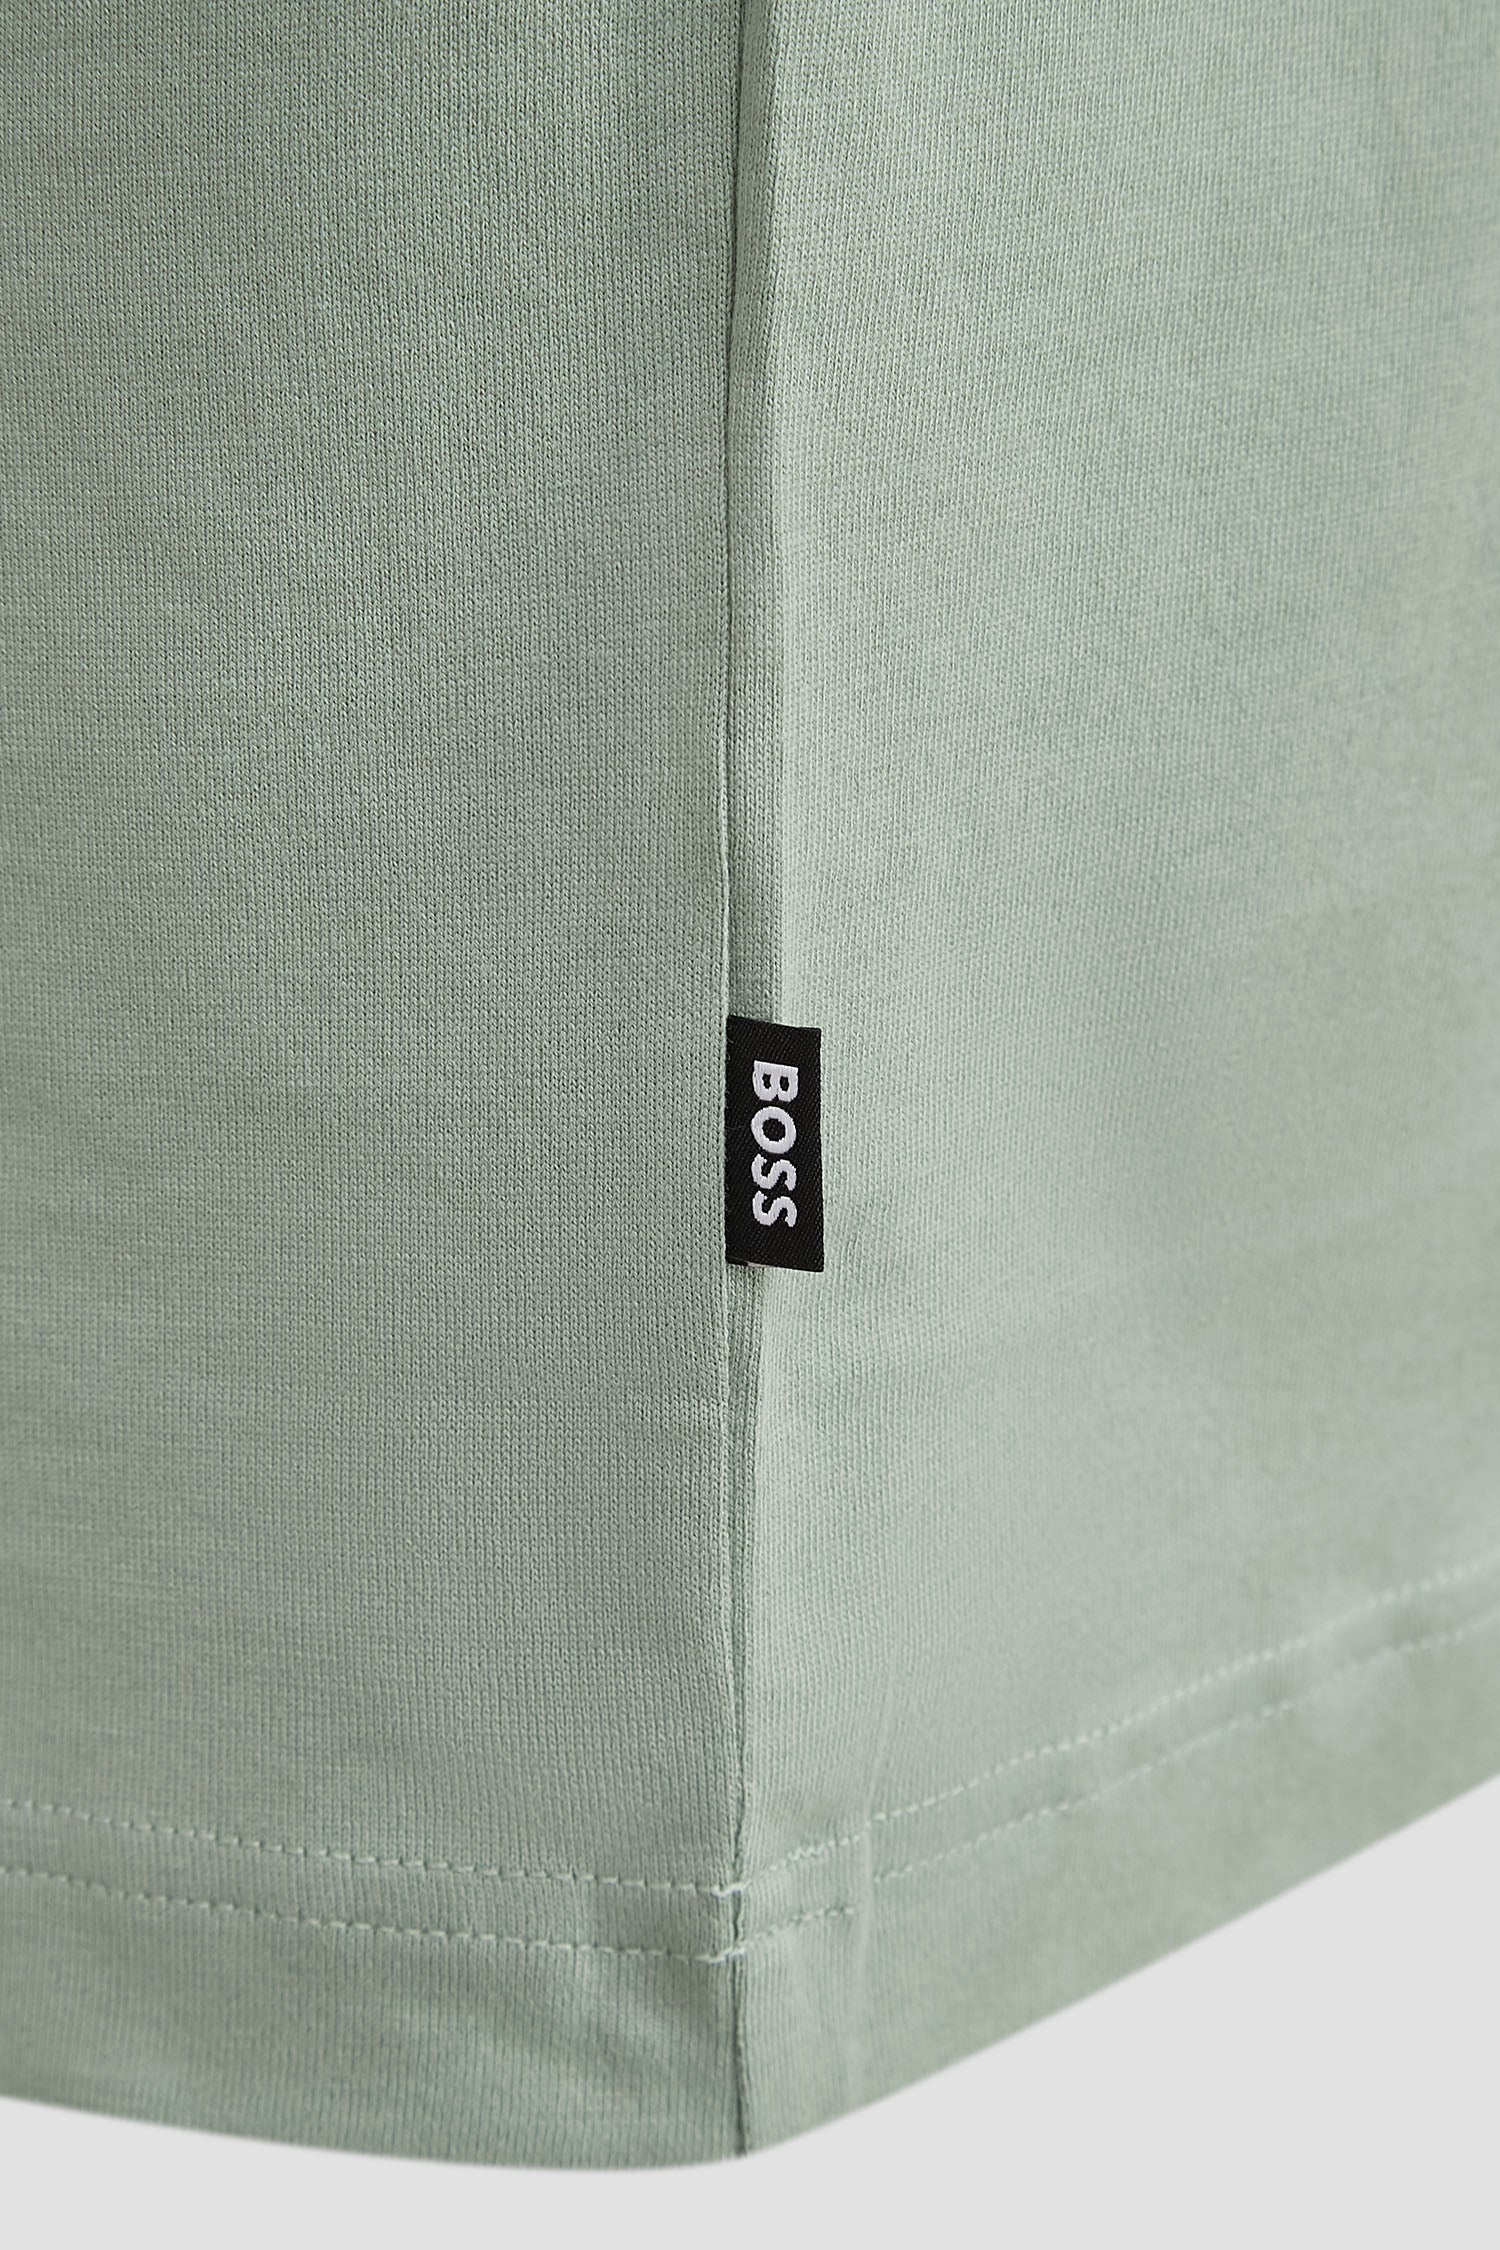 BOSS - TESSIN 88 Open Green Cotton T-Shirt 50512118 373